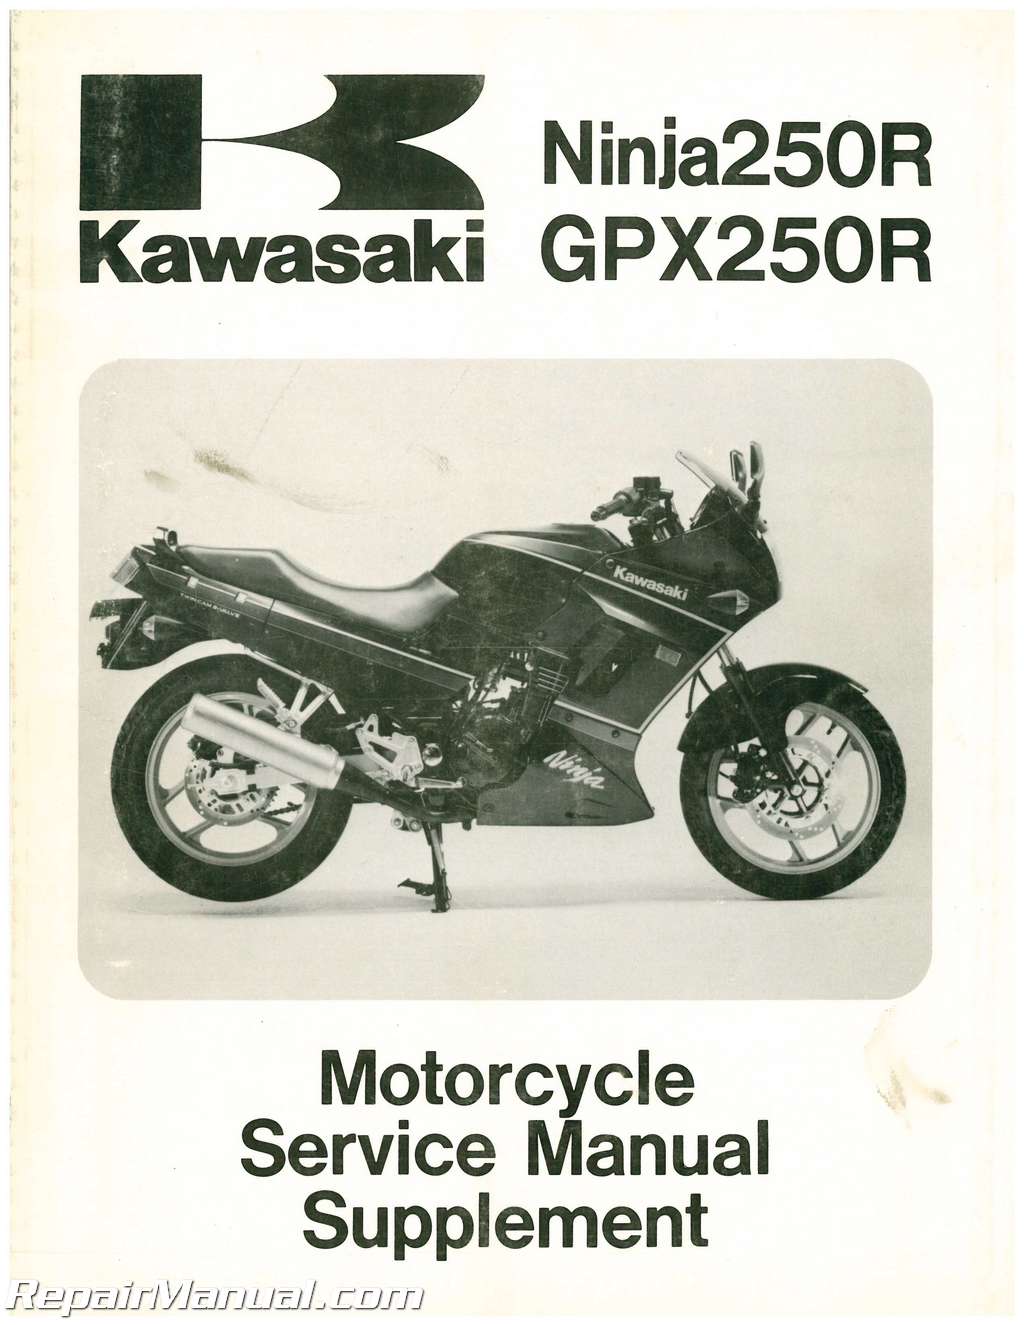 1988-1997 Kawasaki Ninja Motorcycle Supplement Manual